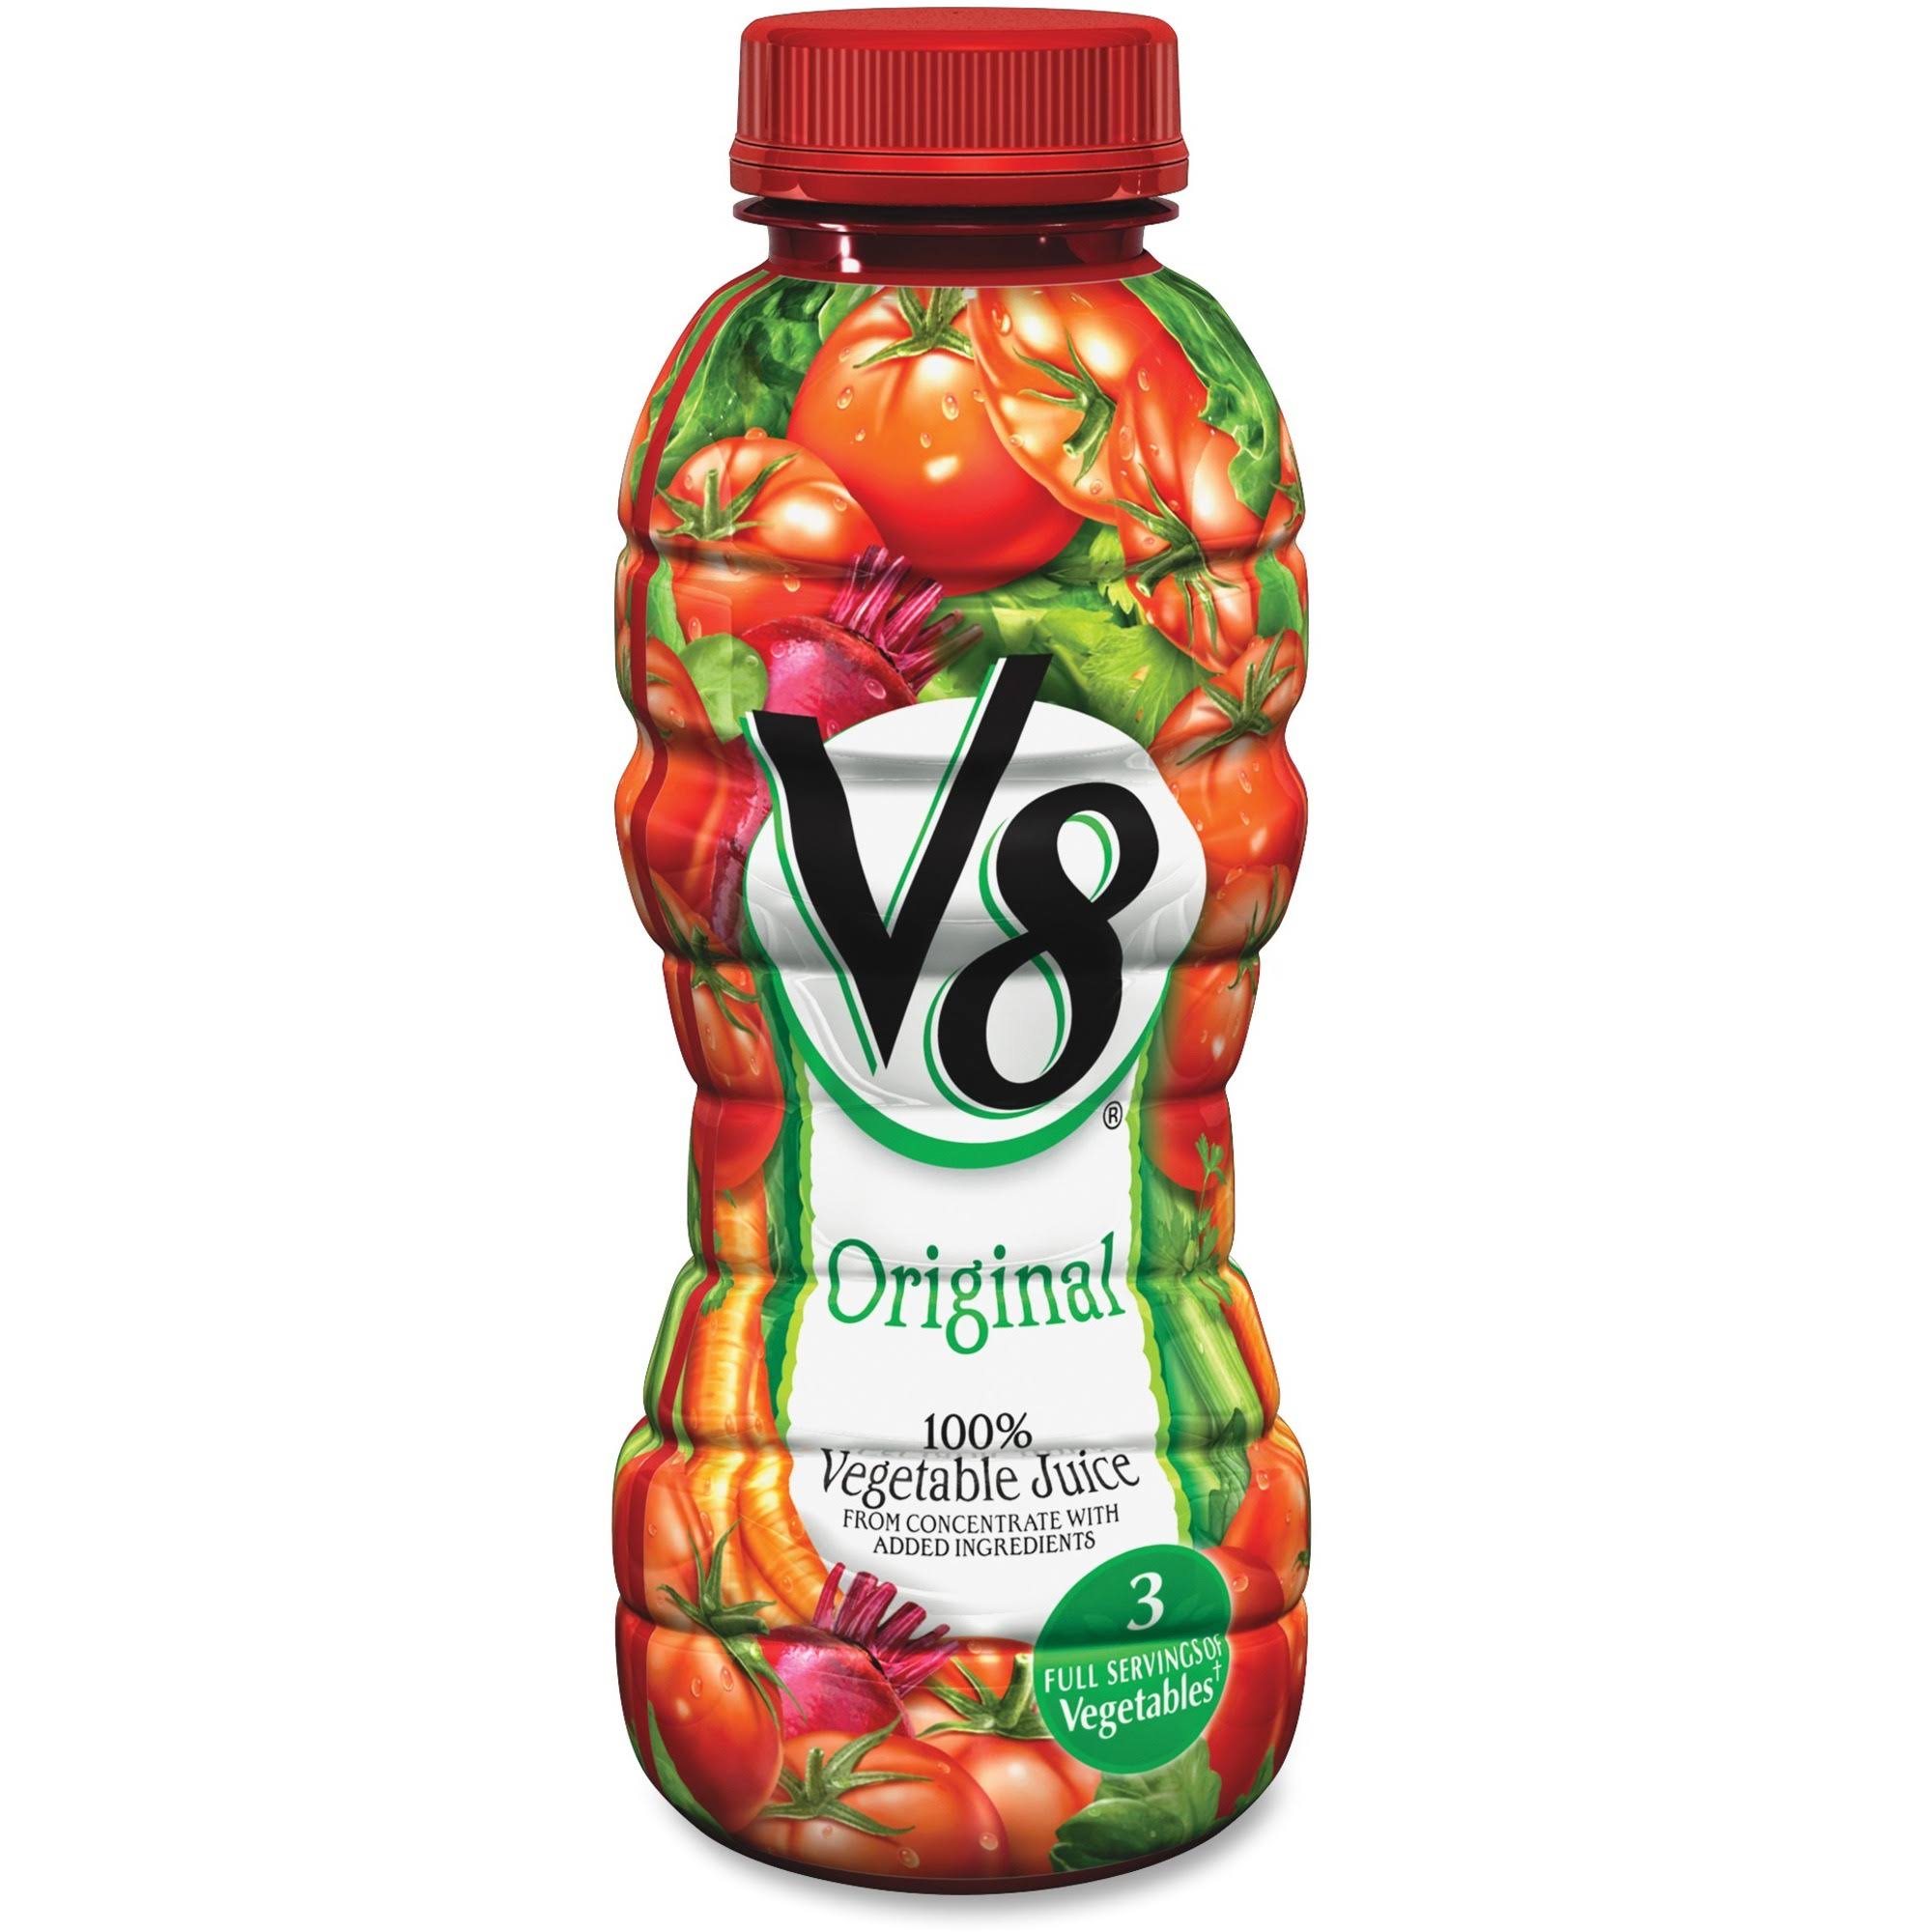 V8 Original 100% Vegetable Juice, 12 oz.